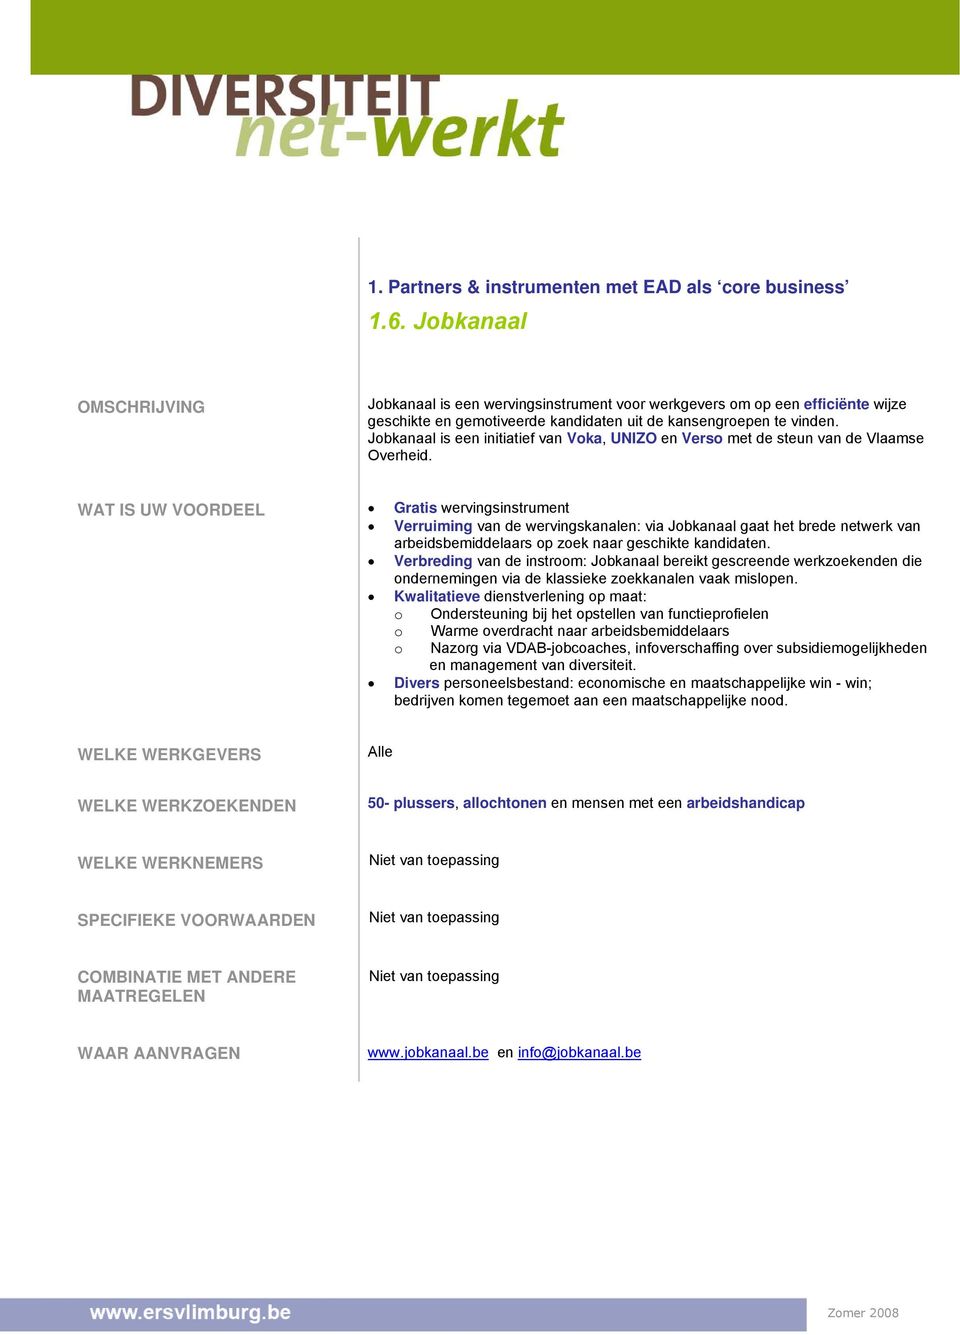 Jobkanaal is een initiatief van Voka, UNIZO en Verso met de steun van de Vlaamse Overheid.